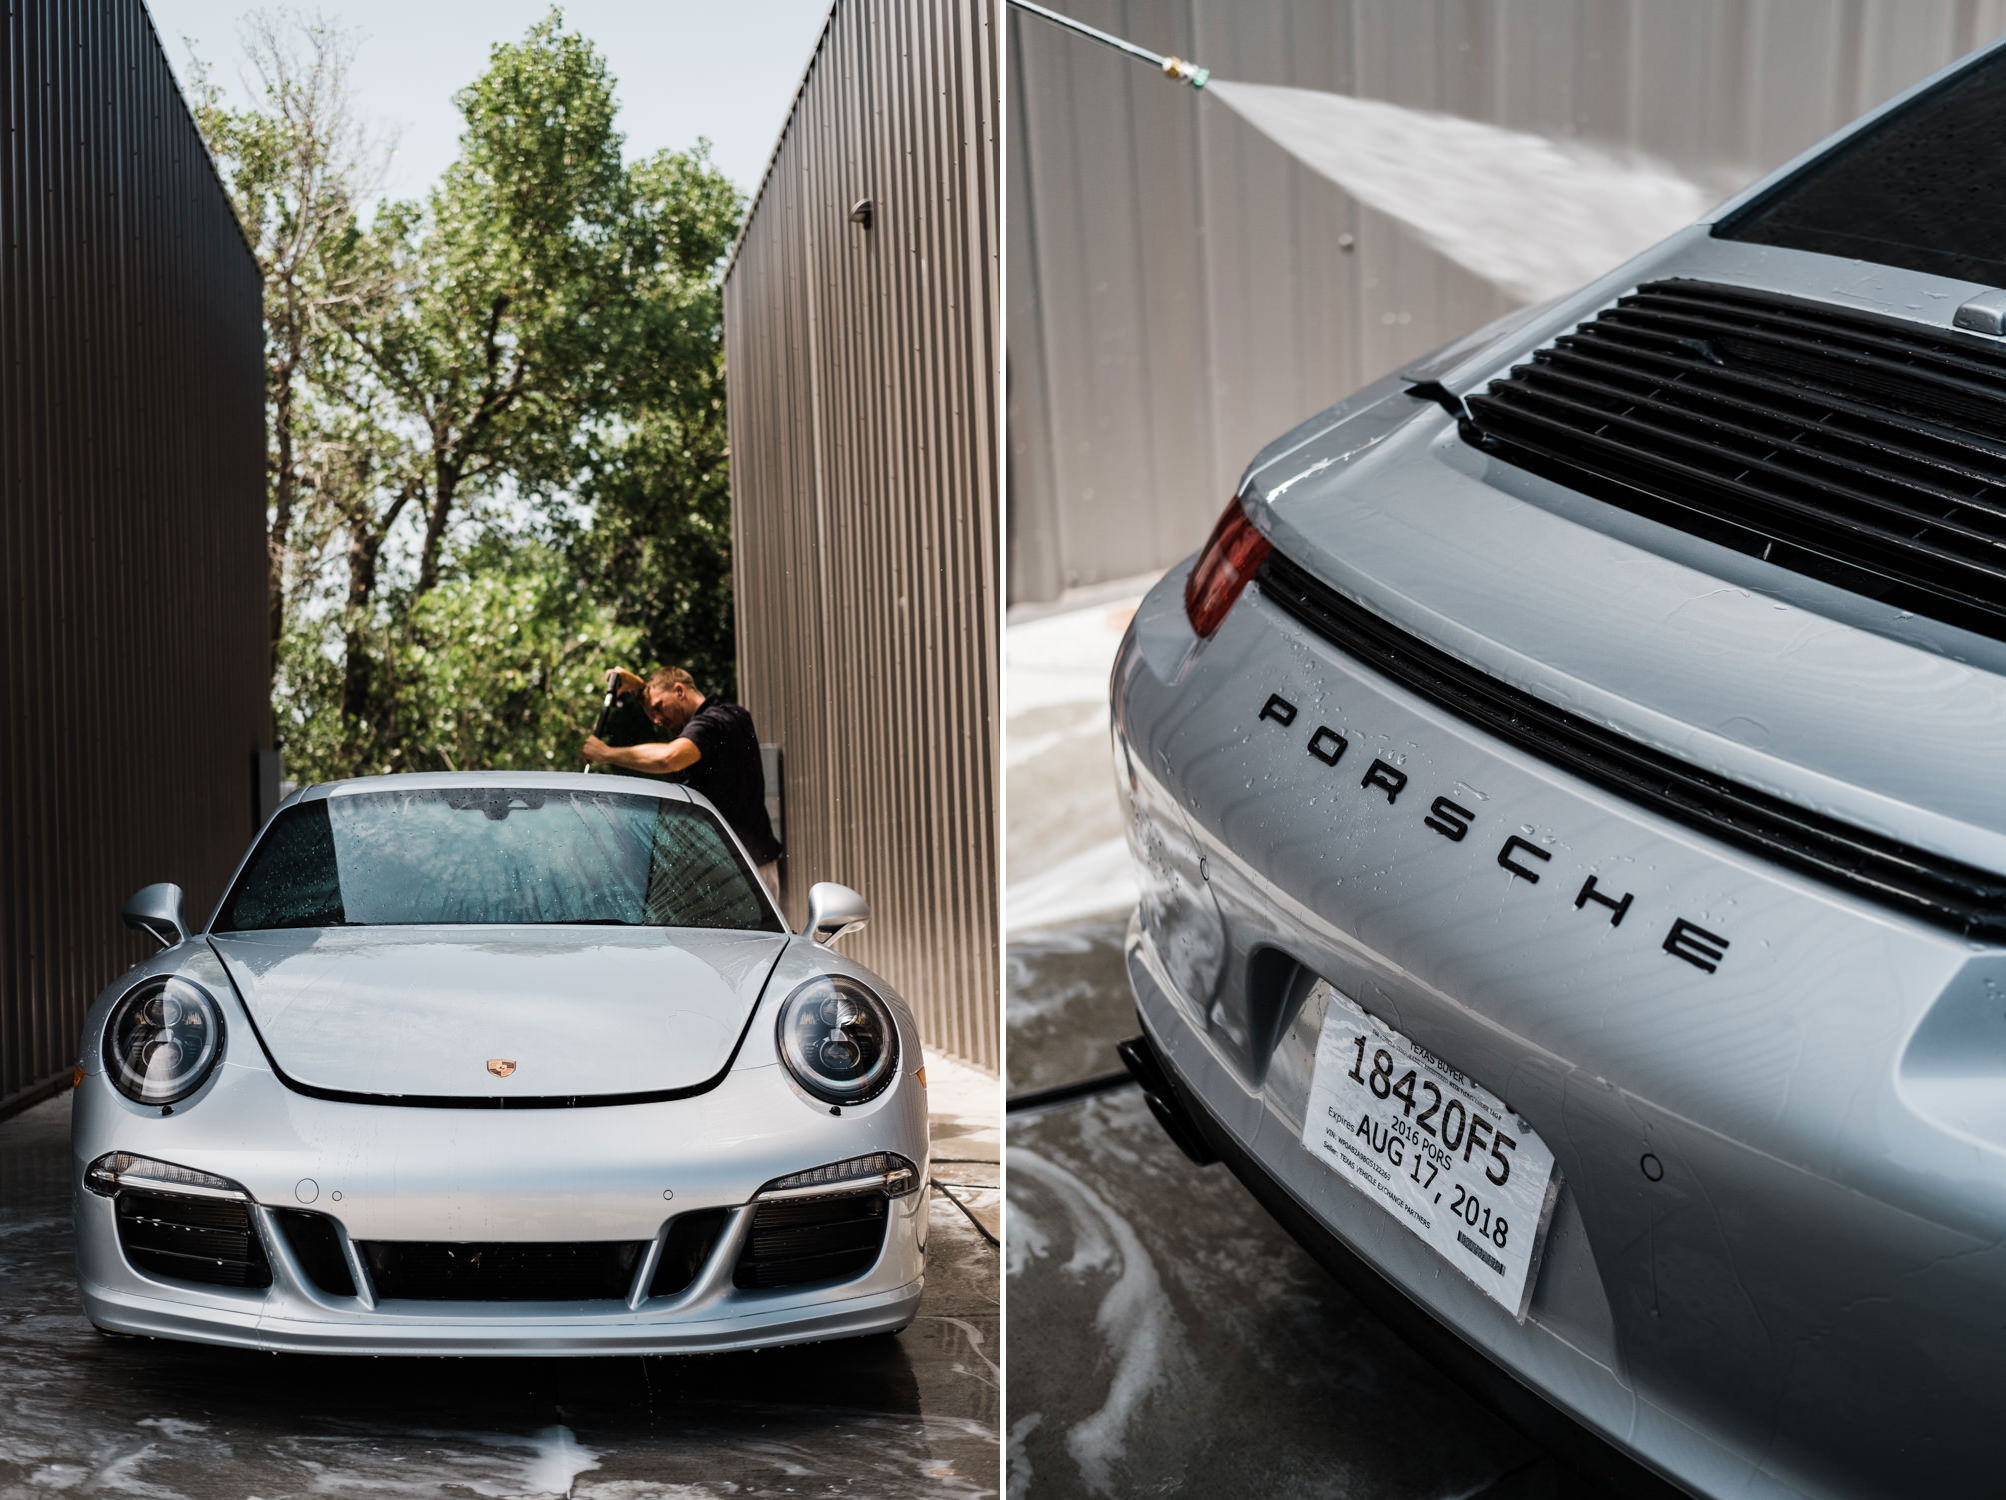 Porsche 911 - Porsche - Wichita Clear Bra - XPEL - XPEL Ultimate - Ceramic Pro - Ceramic Coating - Car Detailing - Porsche 911 GTS-115.jpg